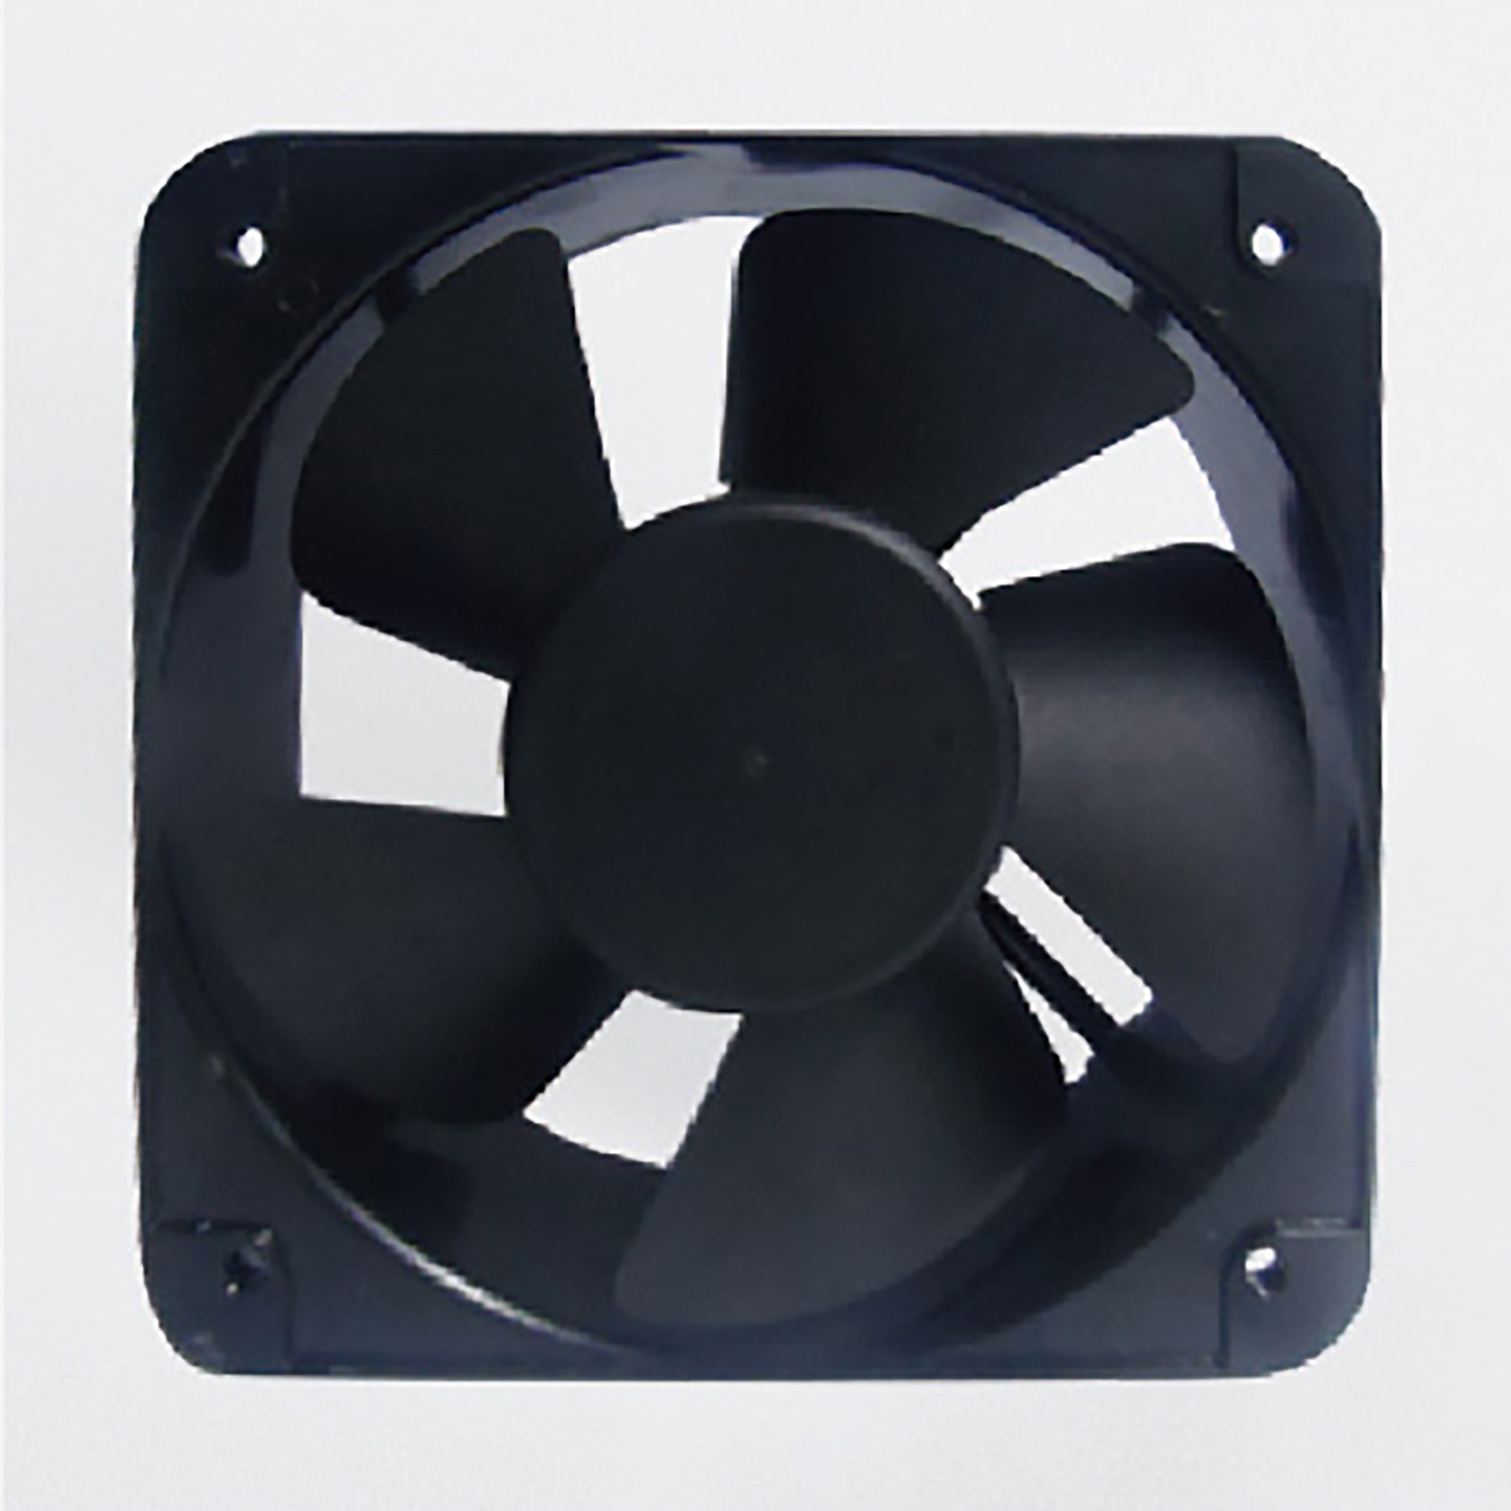 Chassis cabinet fan DC DC waterproof fan cooling explosion-proof fan